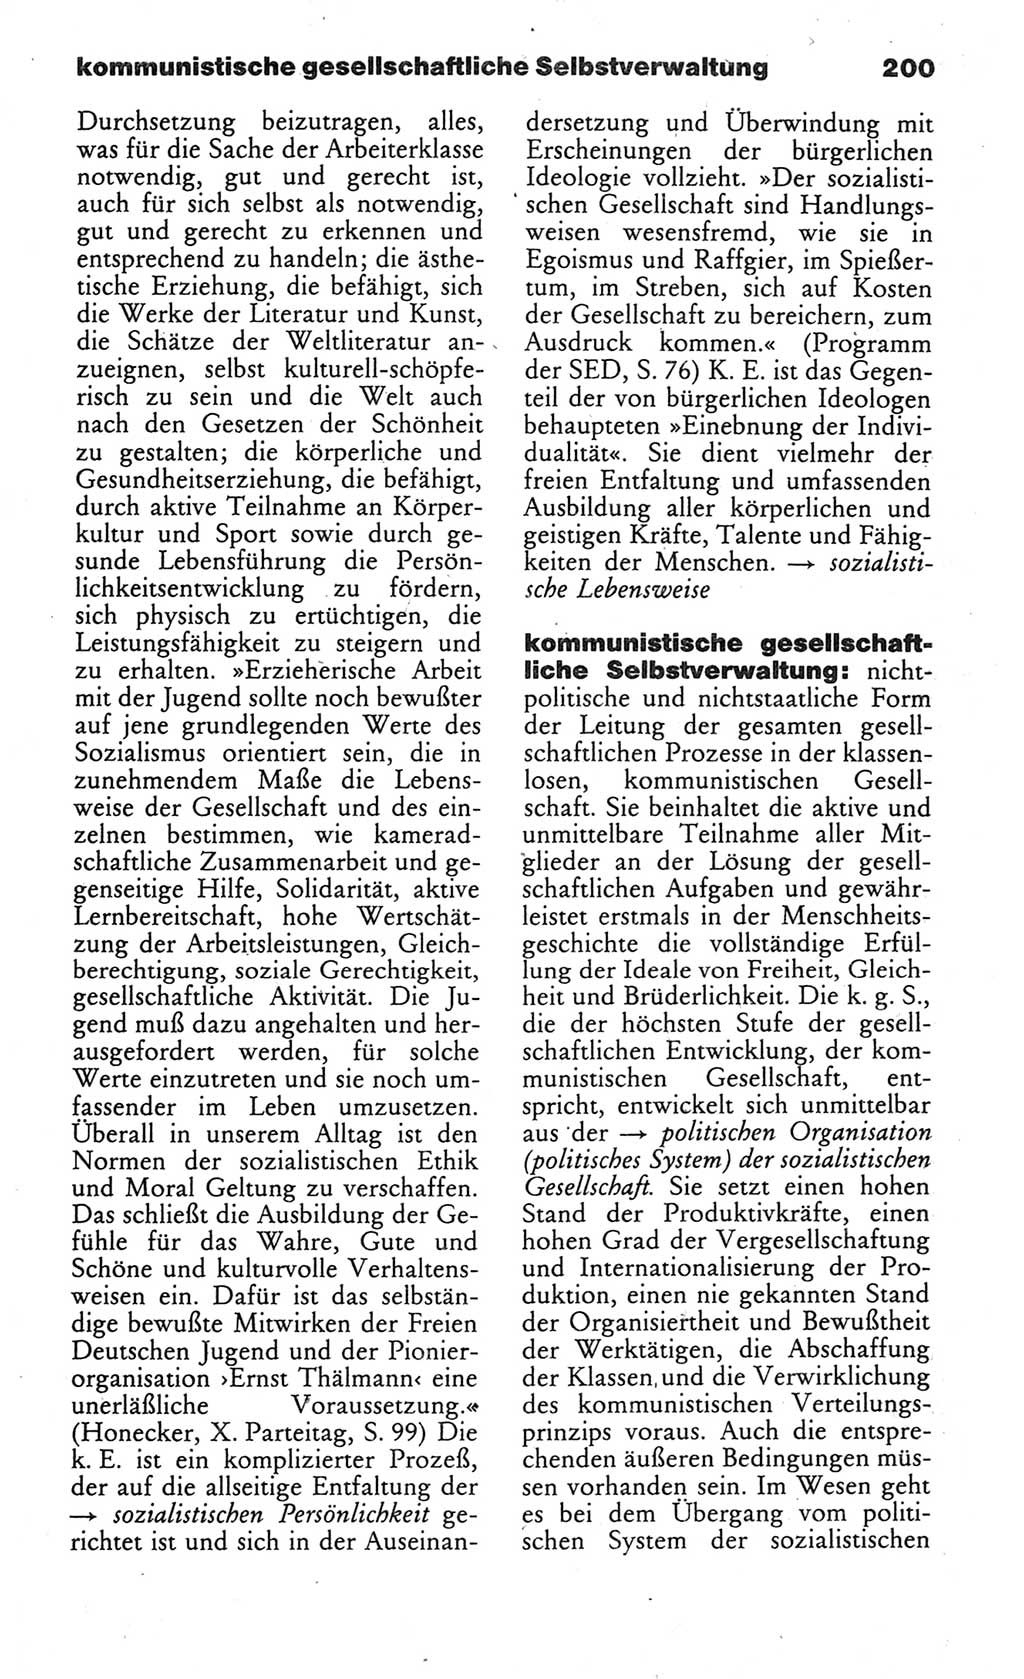 Wörterbuch des wissenschaftlichen Kommunismus [Deutsche Demokratische Republik (DDR)] 1984, Seite 200 (Wb. wiss. Komm. DDR 1984, S. 200)